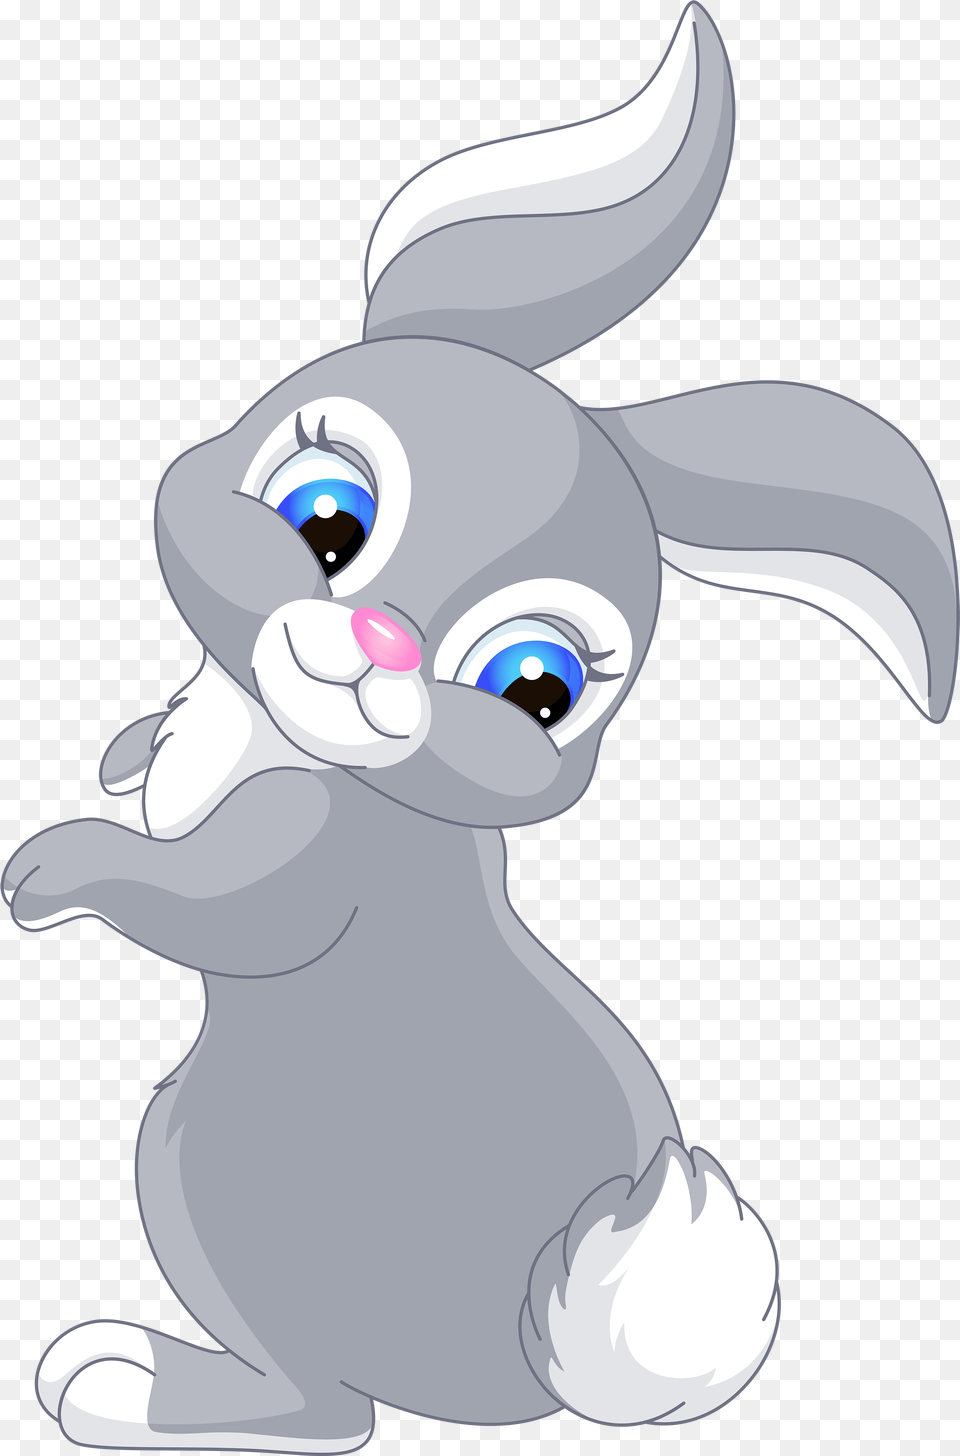 Cute Cartoon Rabbits Clip Art Cartoon Cute Easter Bunny, Book, Comics, Publication, Nature Png Image